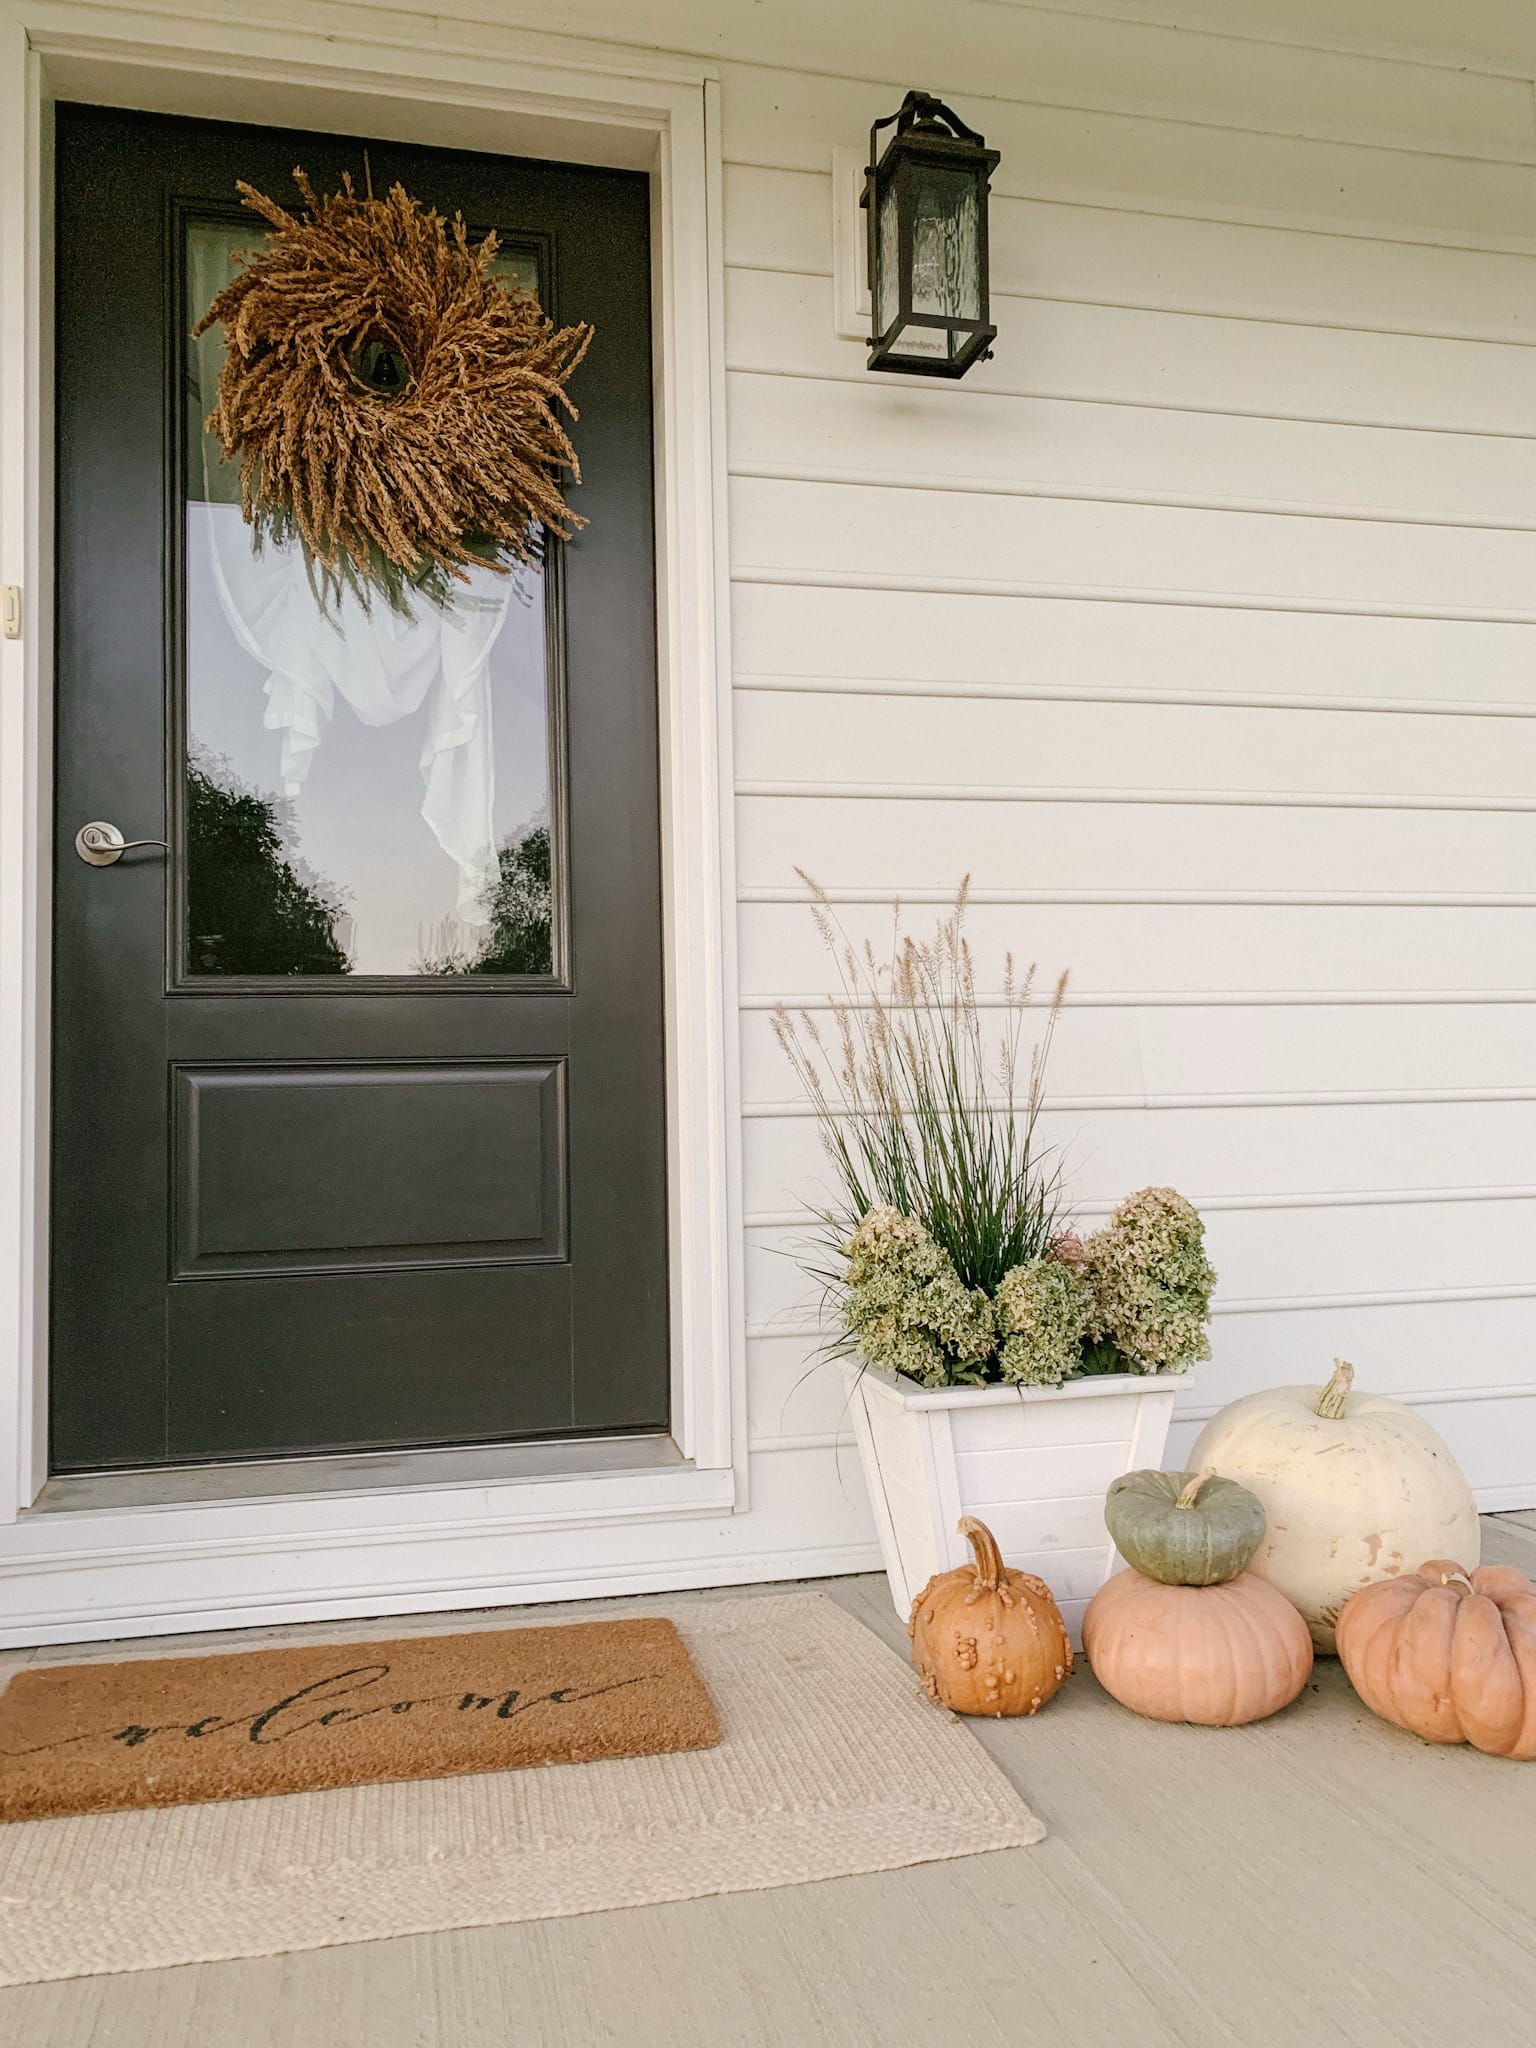 grass and pumpkins porch decor for fall